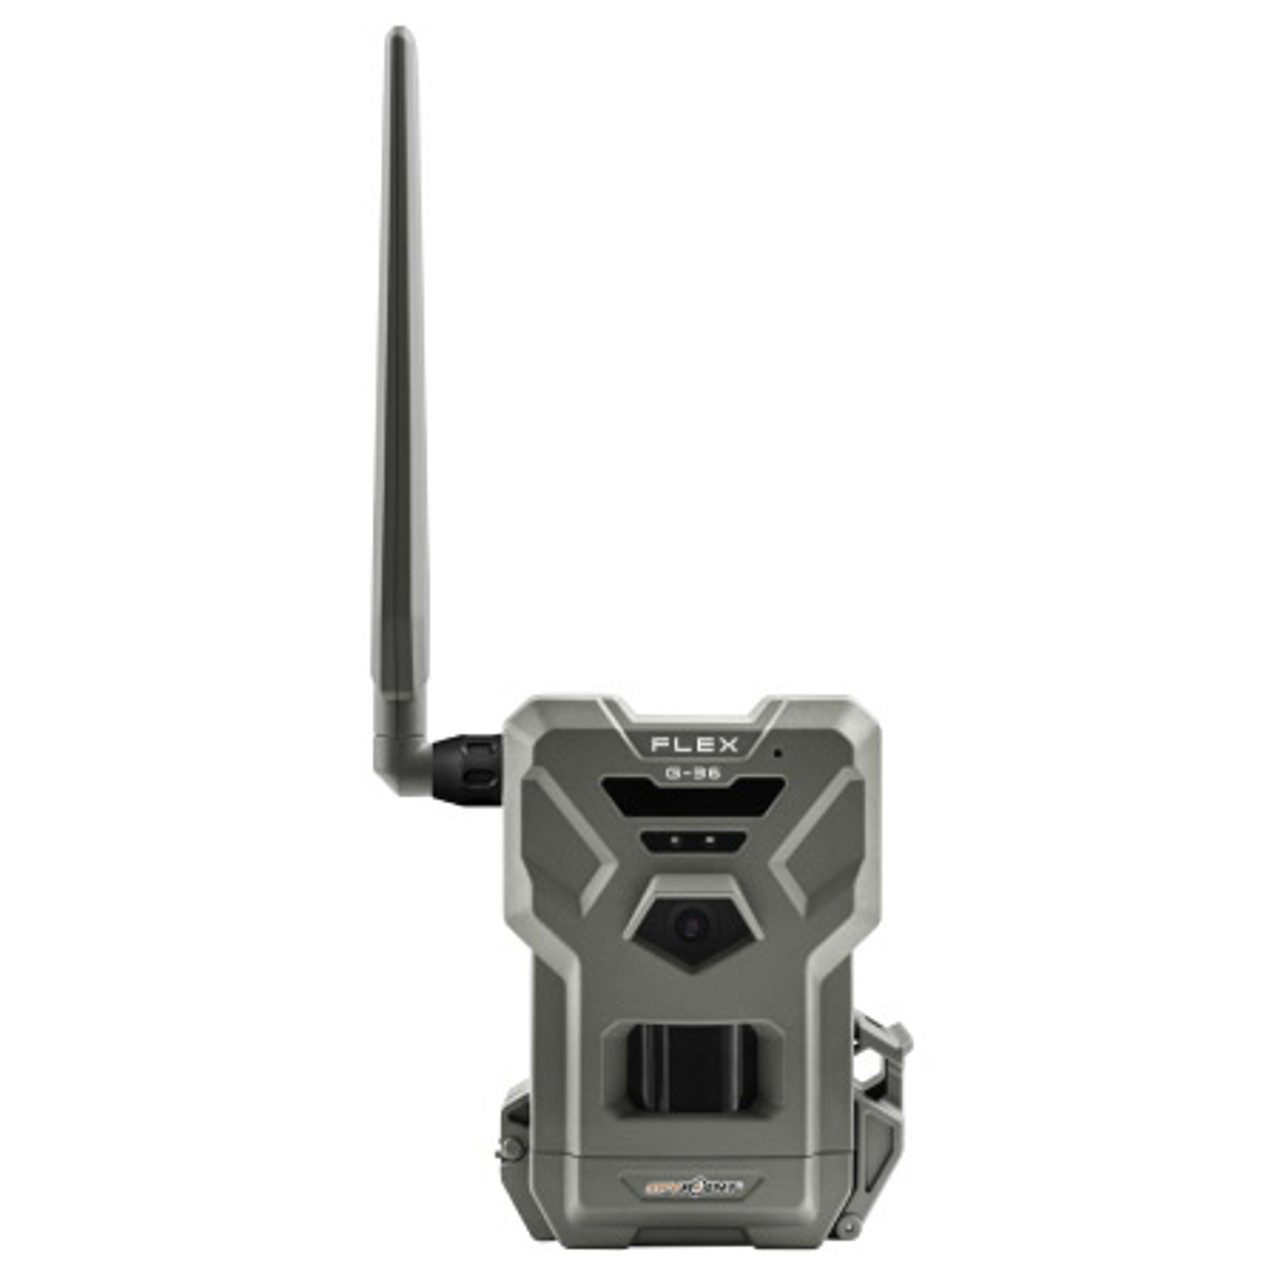 Flex G-36 Cellular Trail Camera by SpyPoint